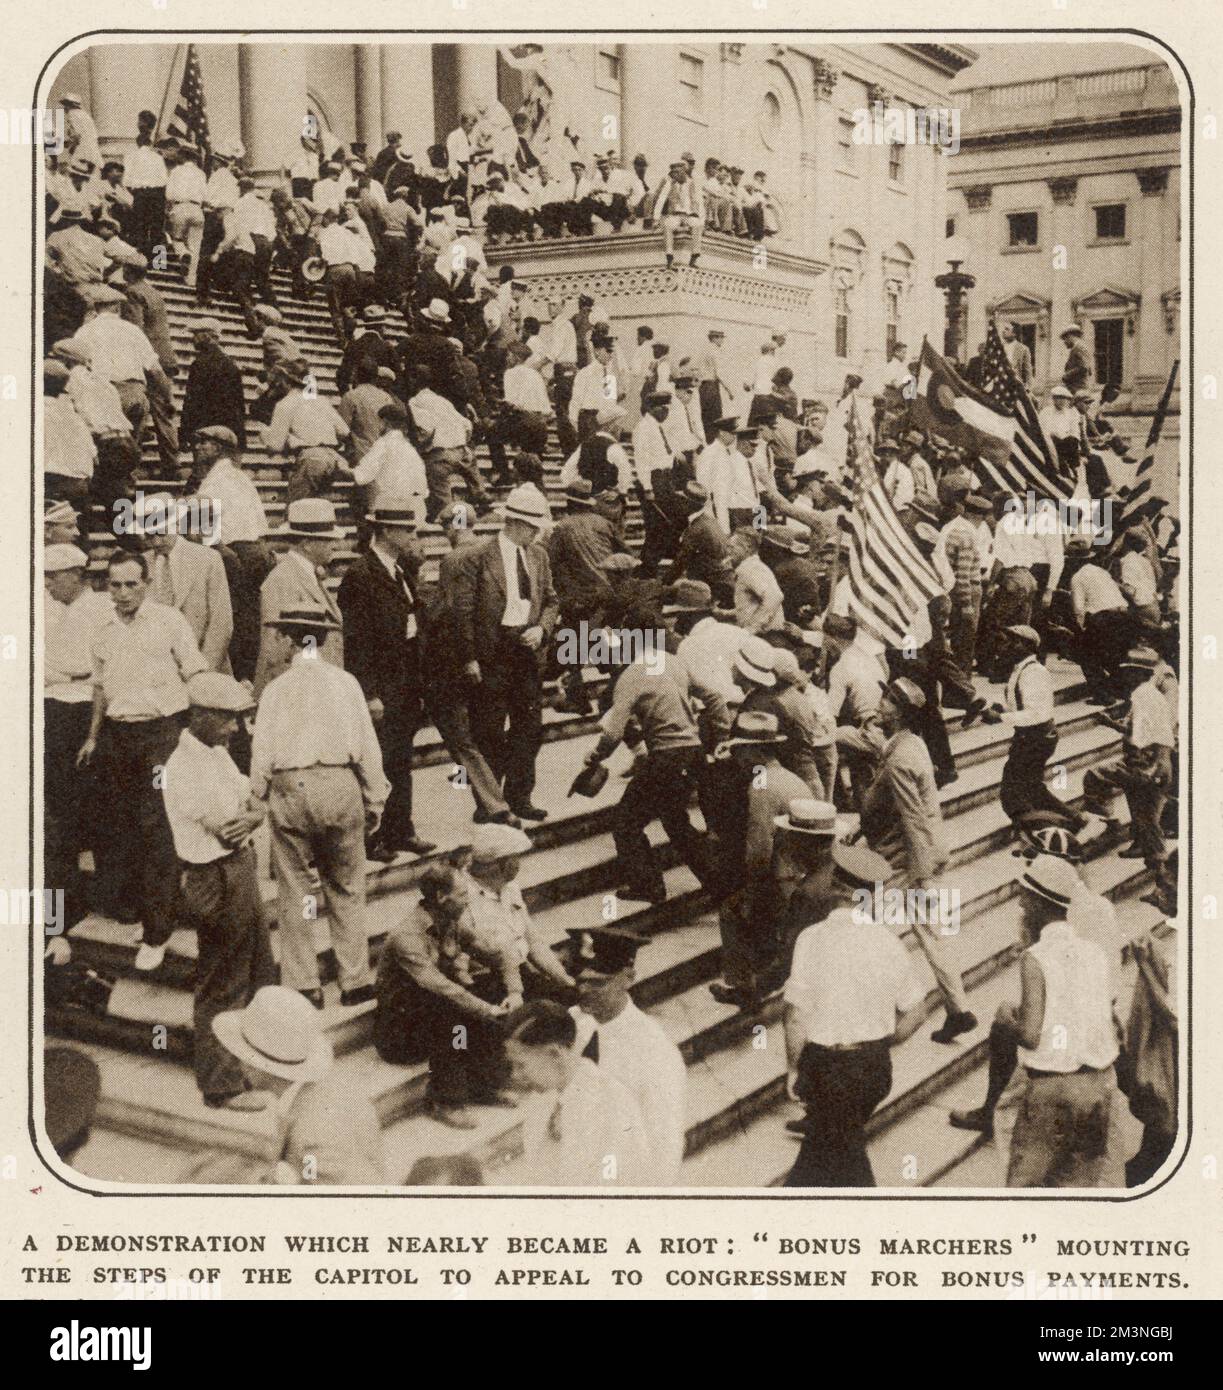 Una dimostrazione che si è quasi trasformata in in una sommossa: 'I marchers di indennità 'che montano i gradini del Campidoglio per fare appello ai membri del Congresso per i pagamenti di indennità. Data: Luglio 1932 Foto Stock